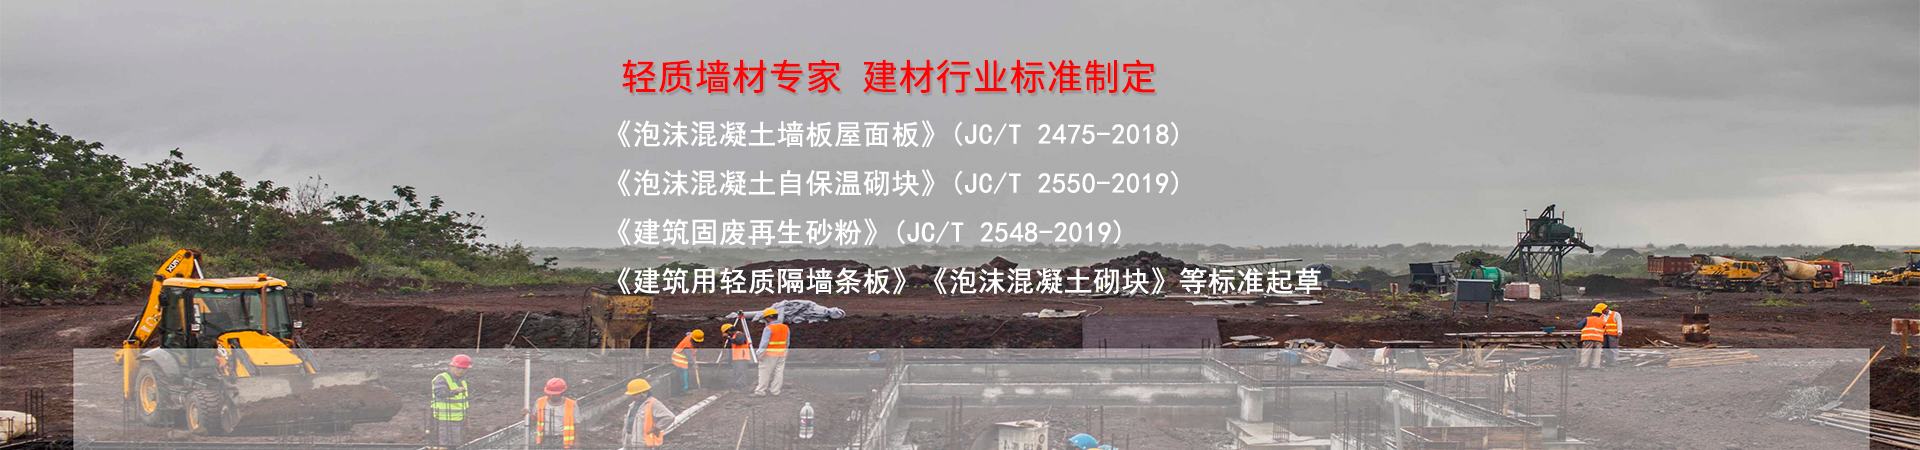 廣州恒德參與多項建材行業標準制定